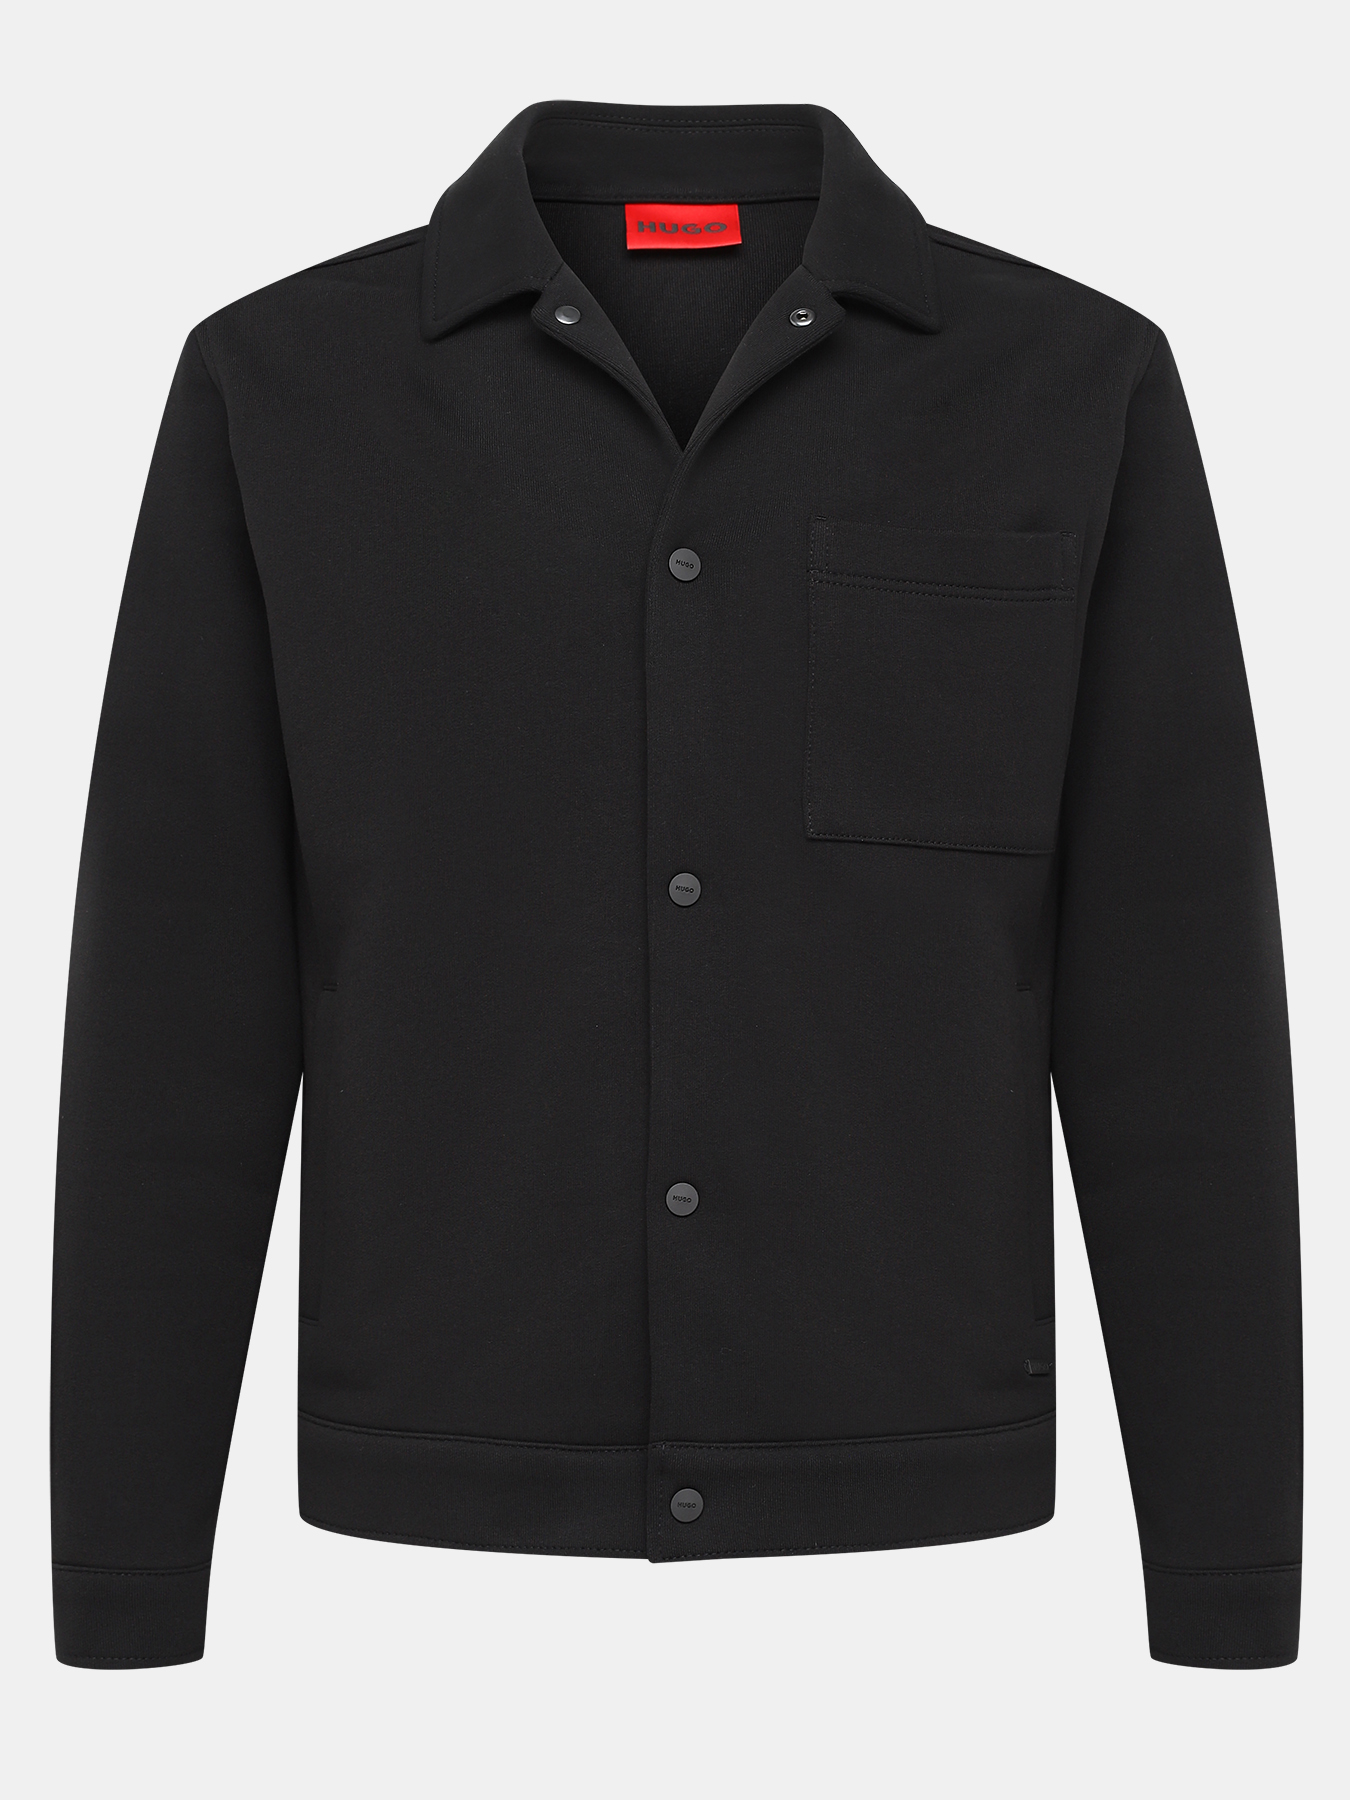 Пиджак Hejrik HUGO 420478-043, цвет черный, размер 48-50